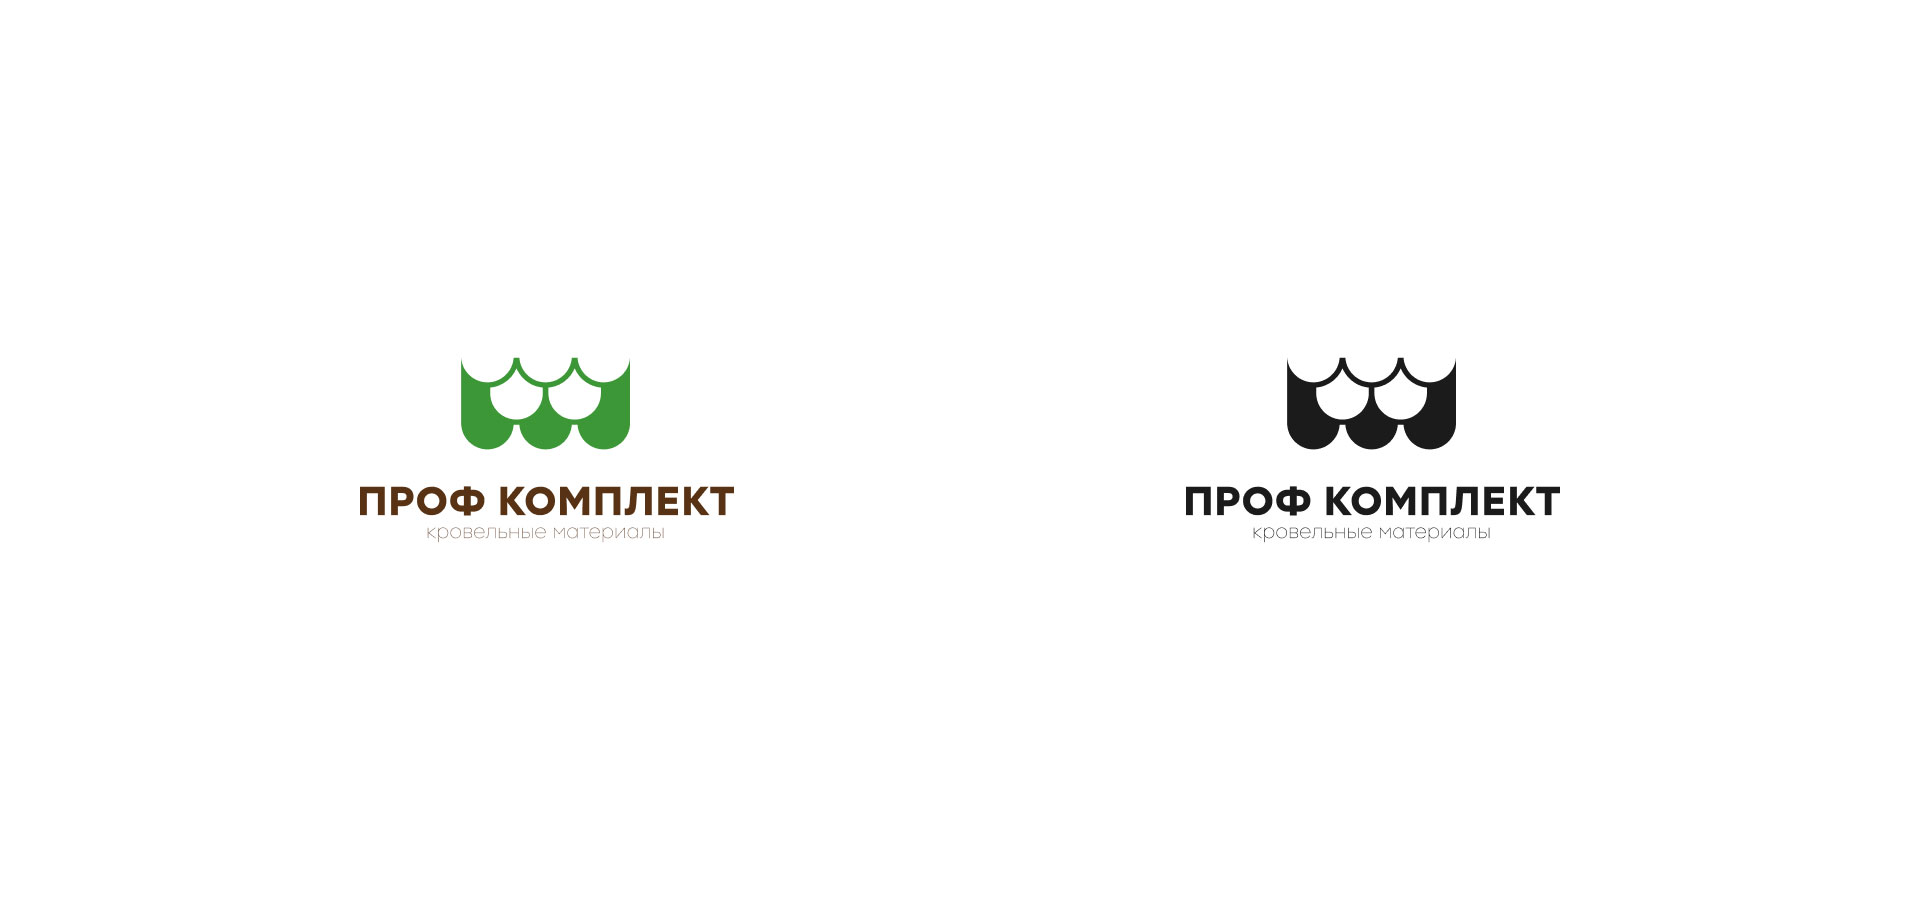 Создание логотипа компании «Проф Комплект» в 